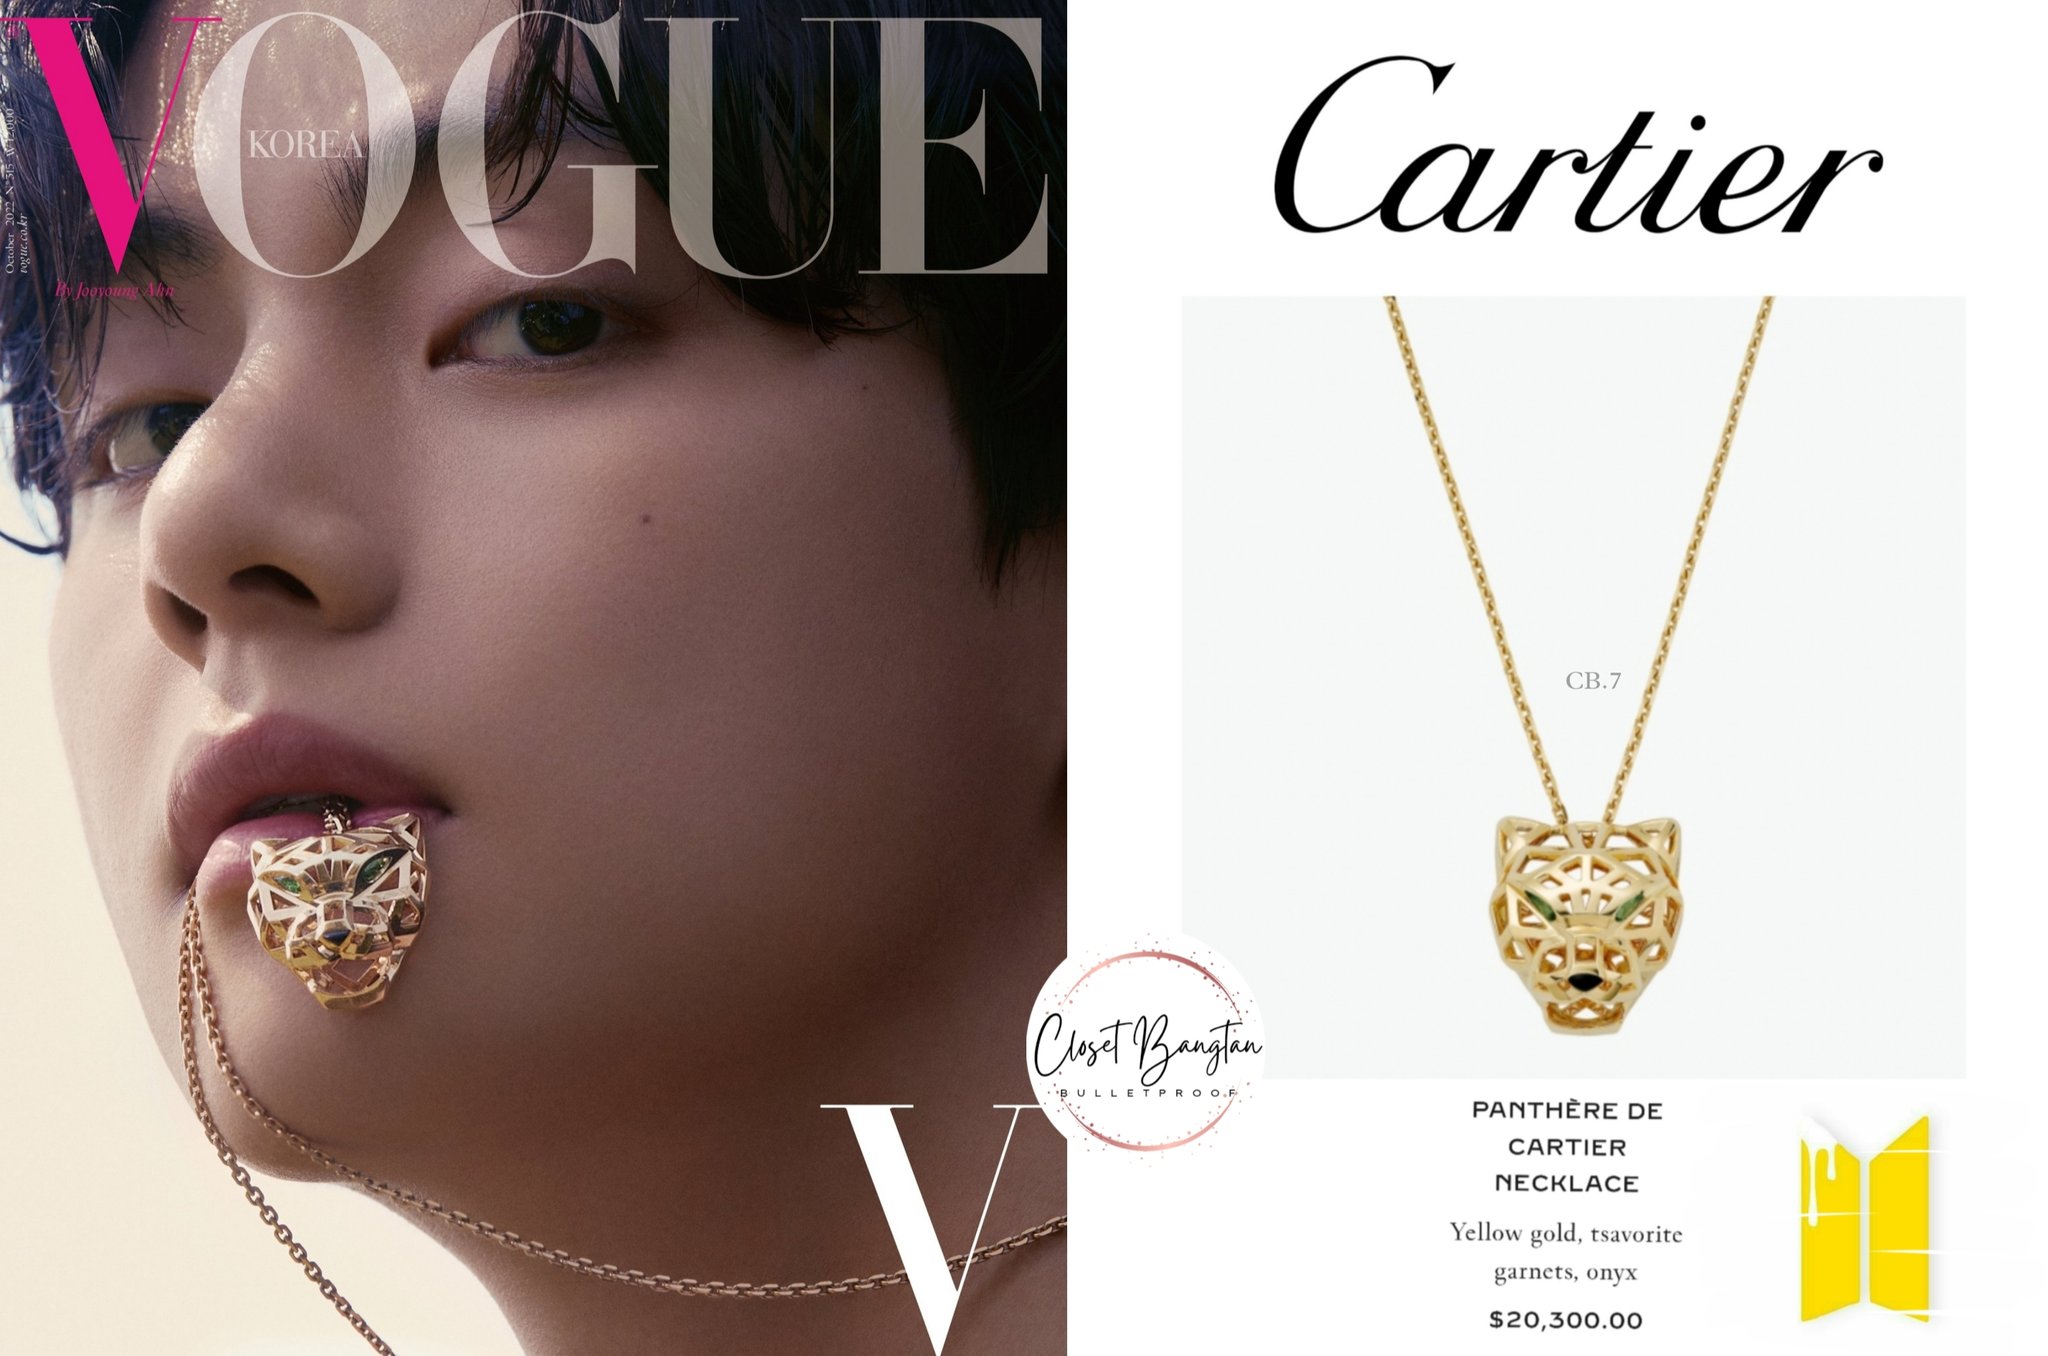 BTS' V x Cartier For VOGUE Korea